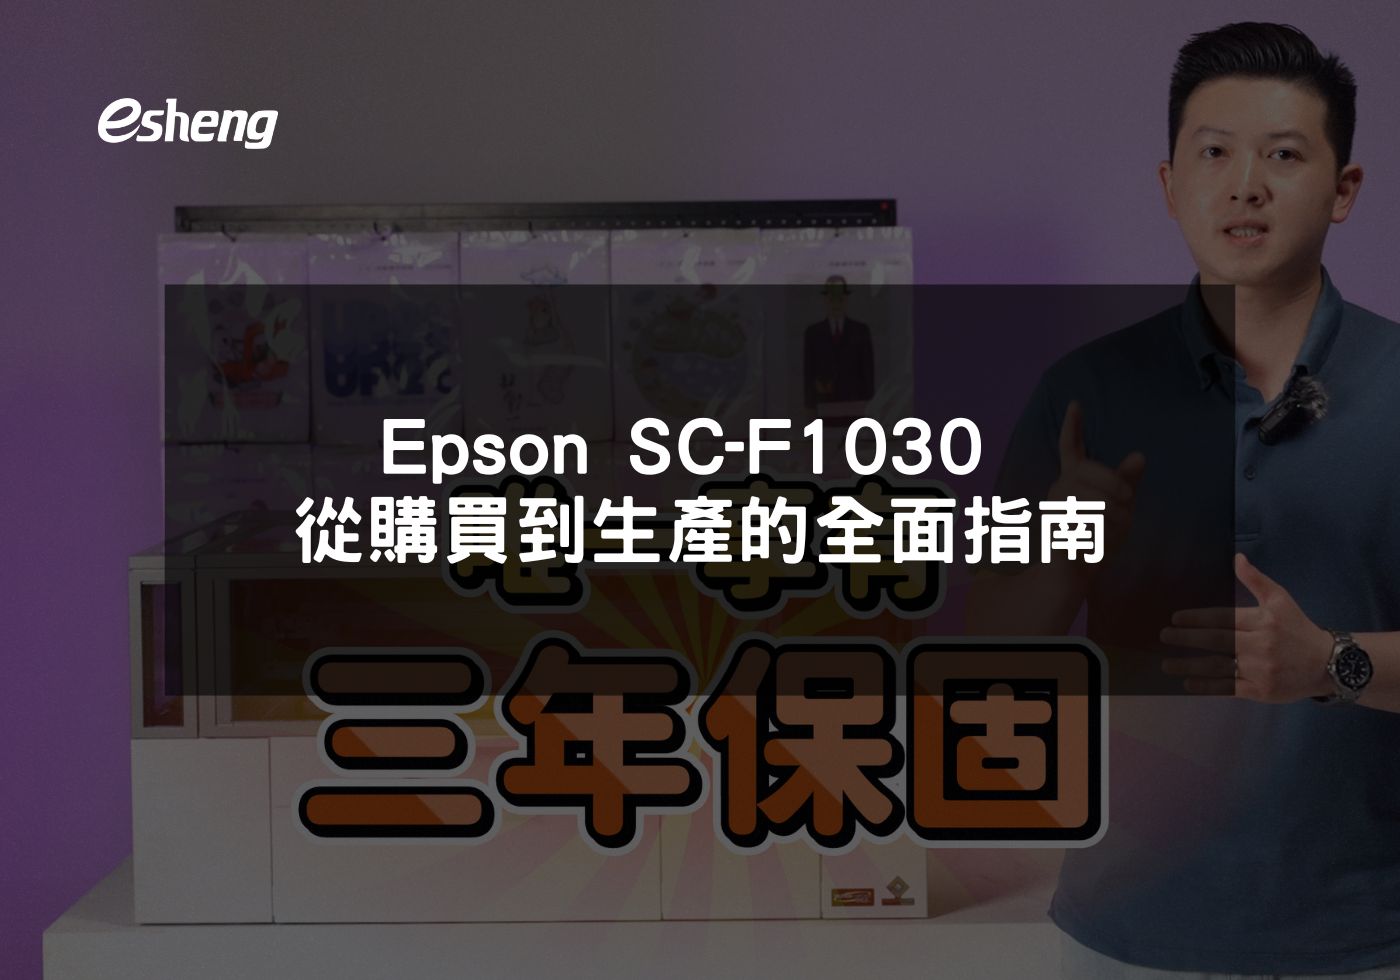 您目前正在查看 Epson SC-F1030 從購買到生產的全面指南